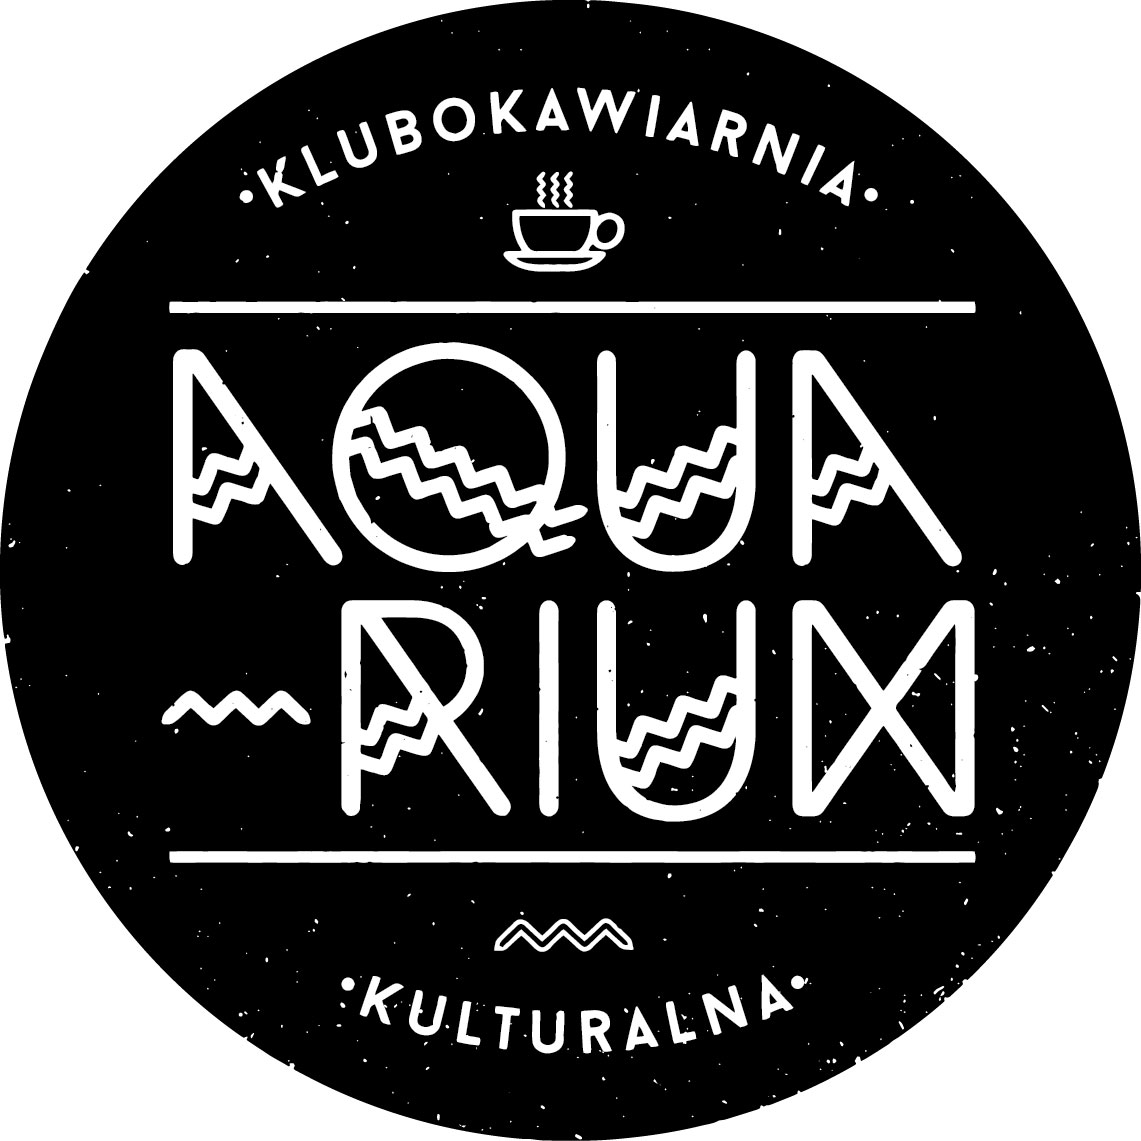  Botaniczne inspiracje Na zdjęciu logo Aquarium